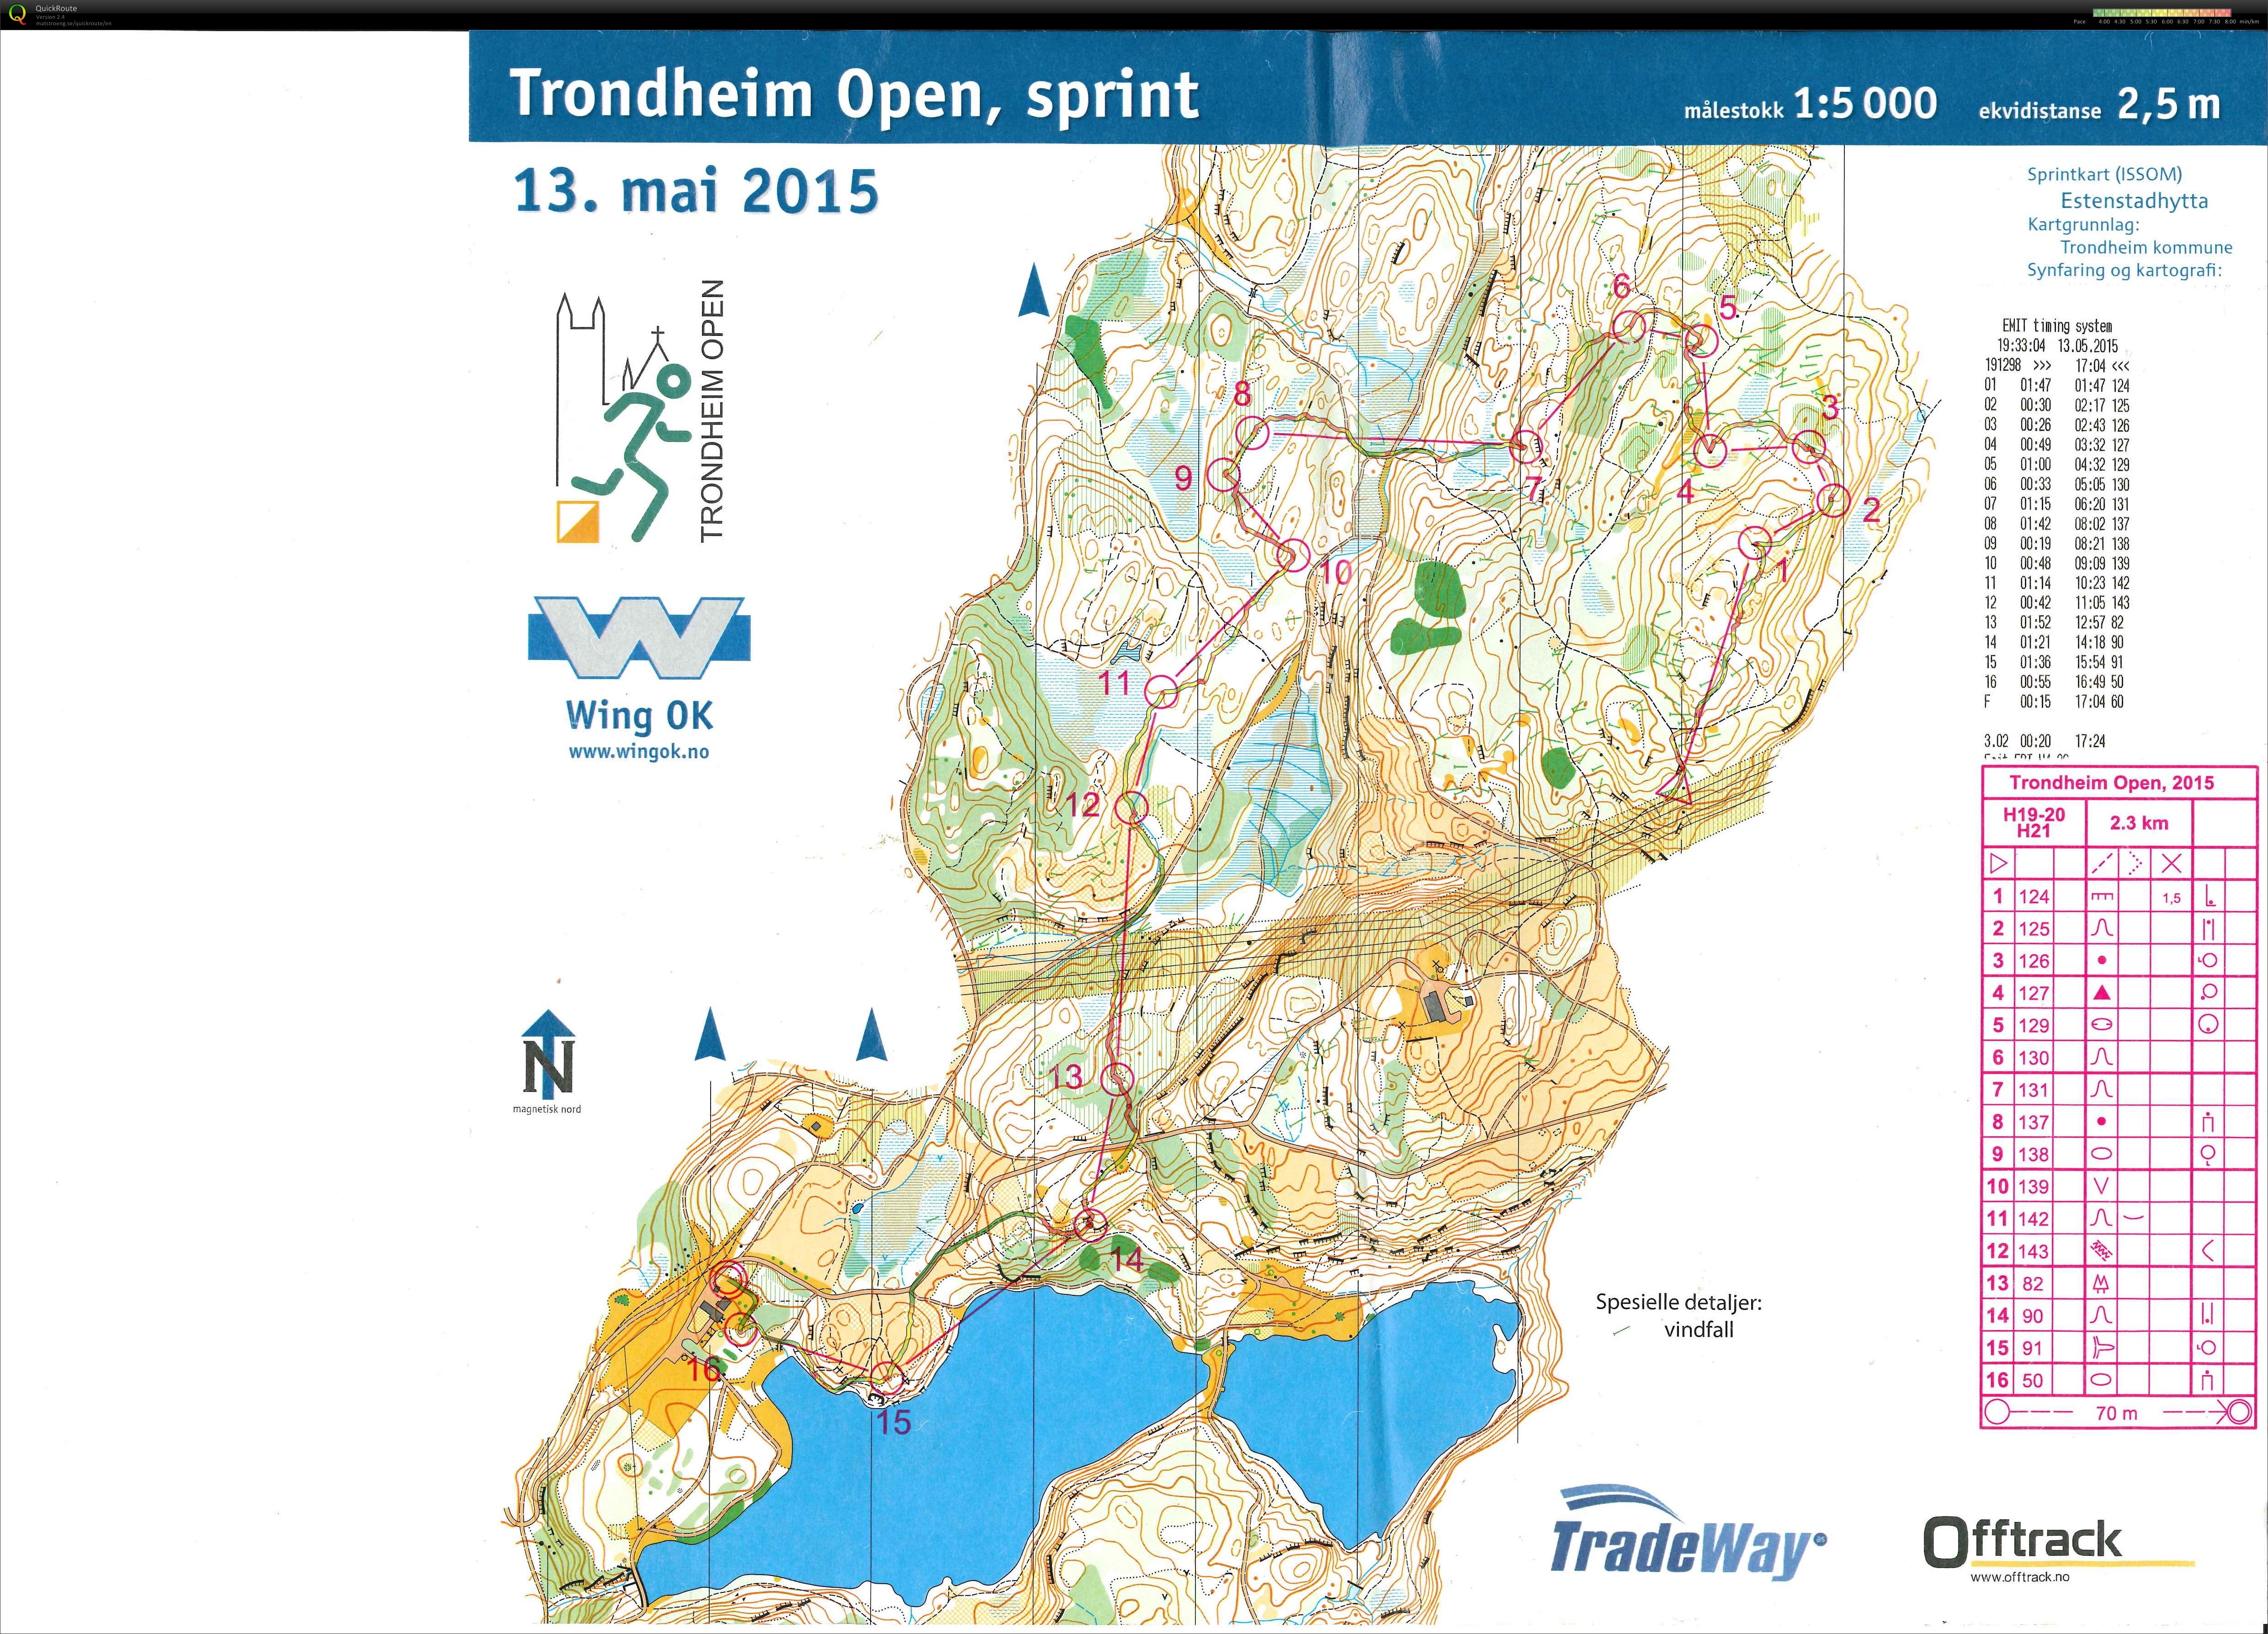 Trondheim Open, Sprint (13-05-2015)